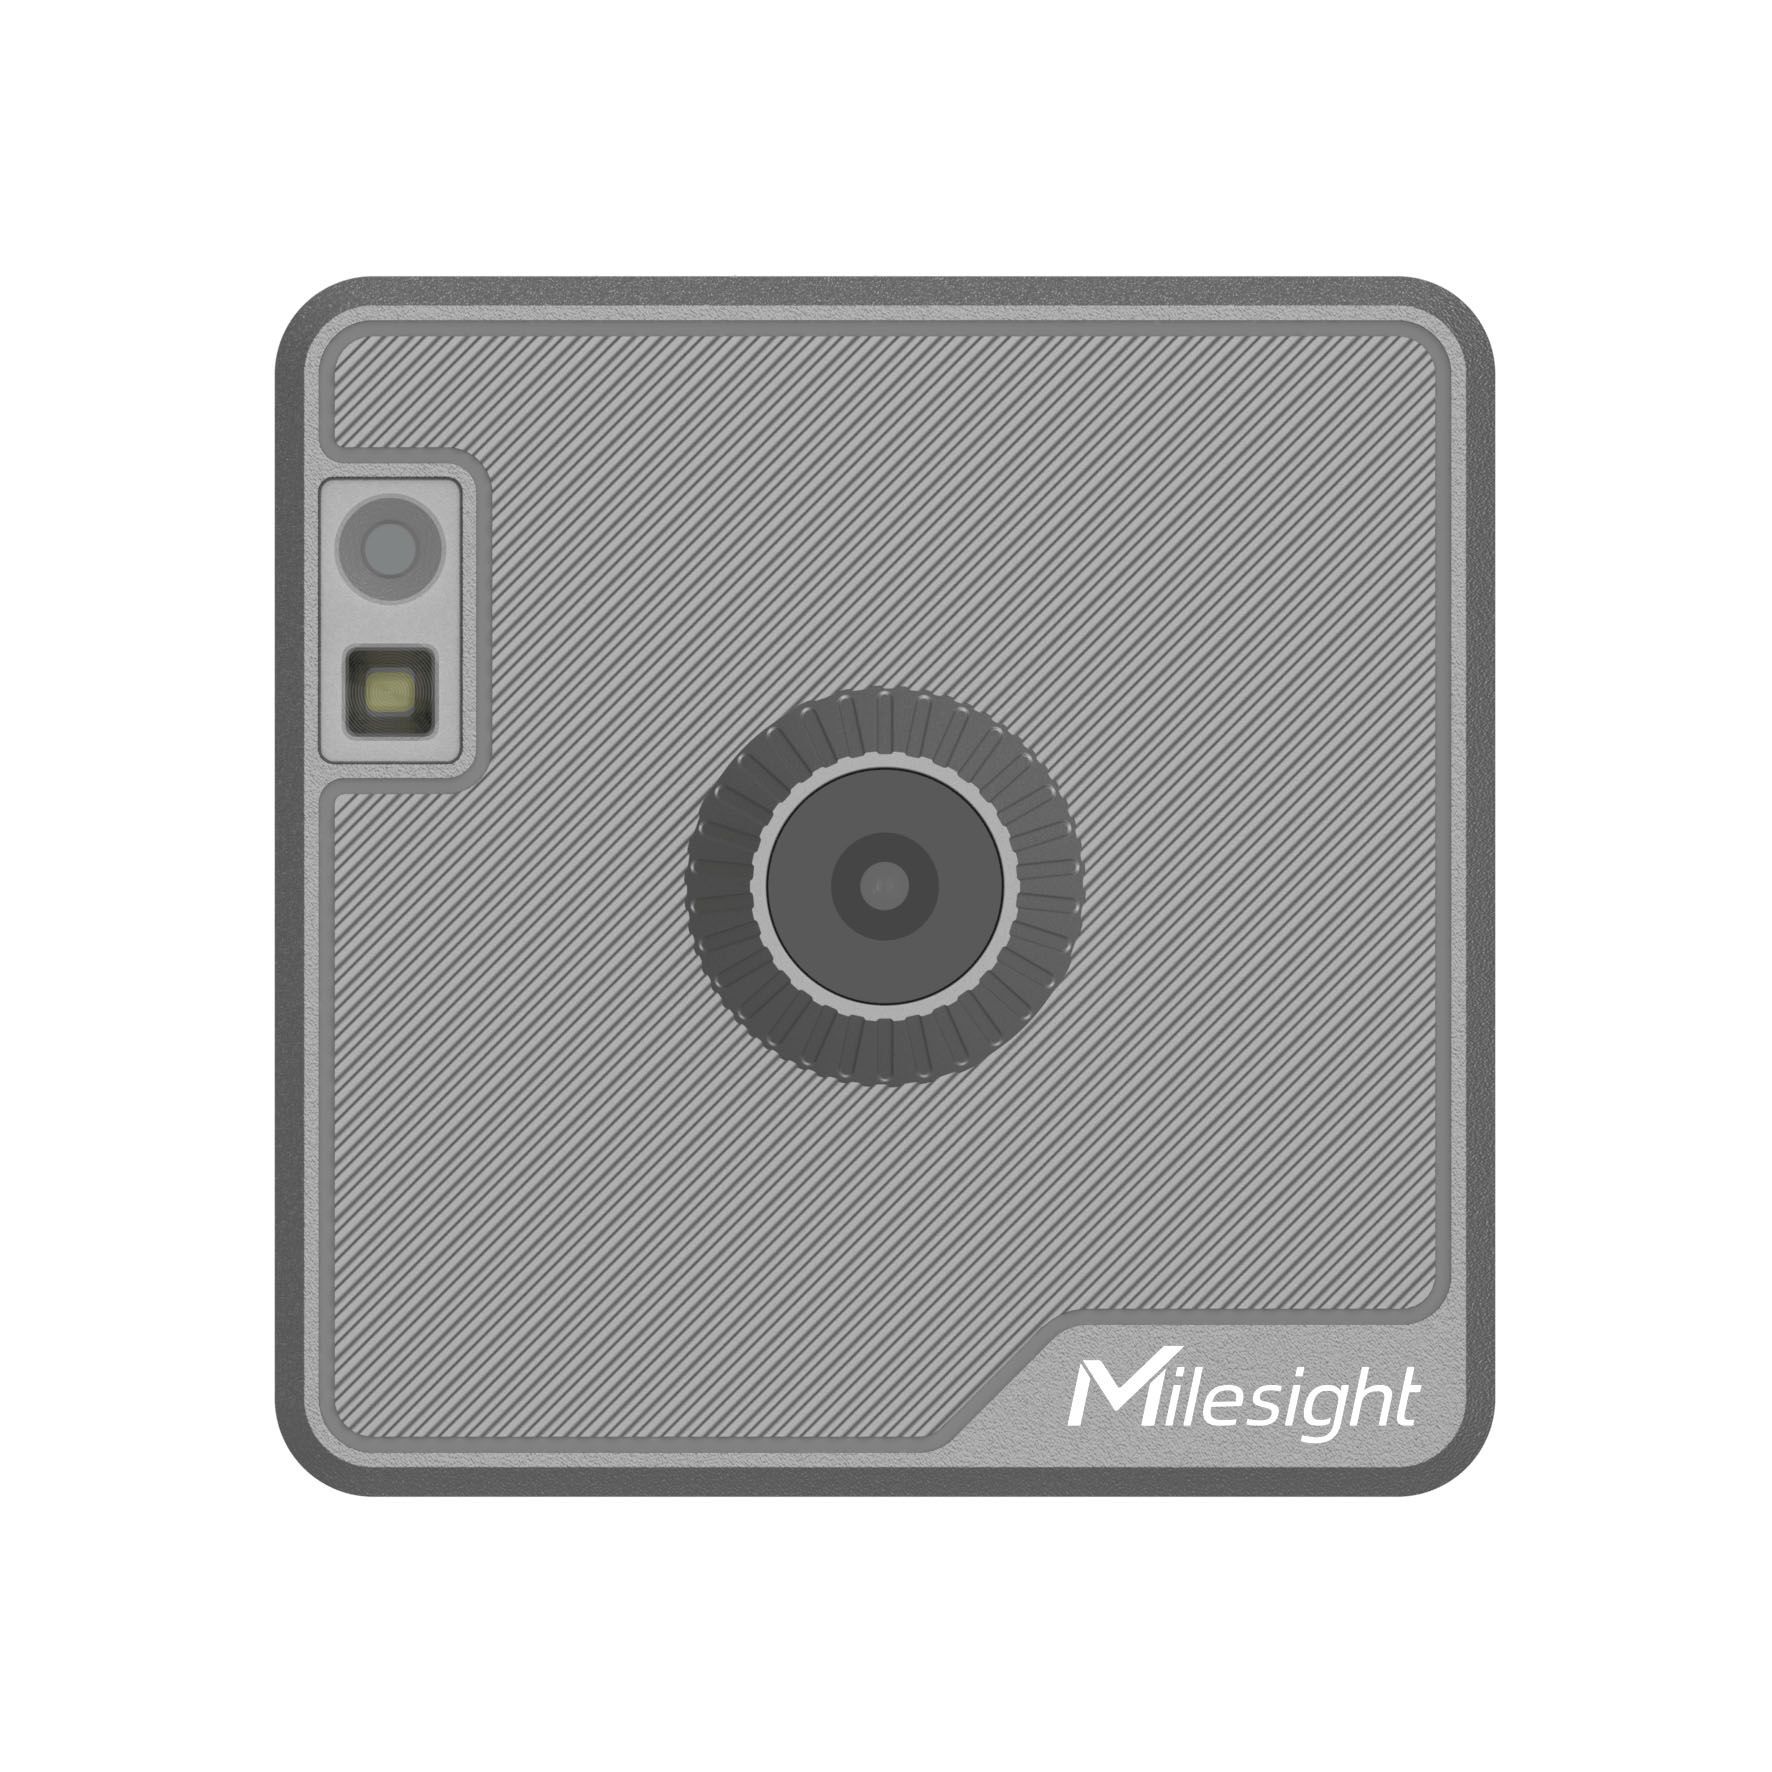 SC541-1020 AIoT Wi-Fi MQTT kamera pro inspekční snímaní